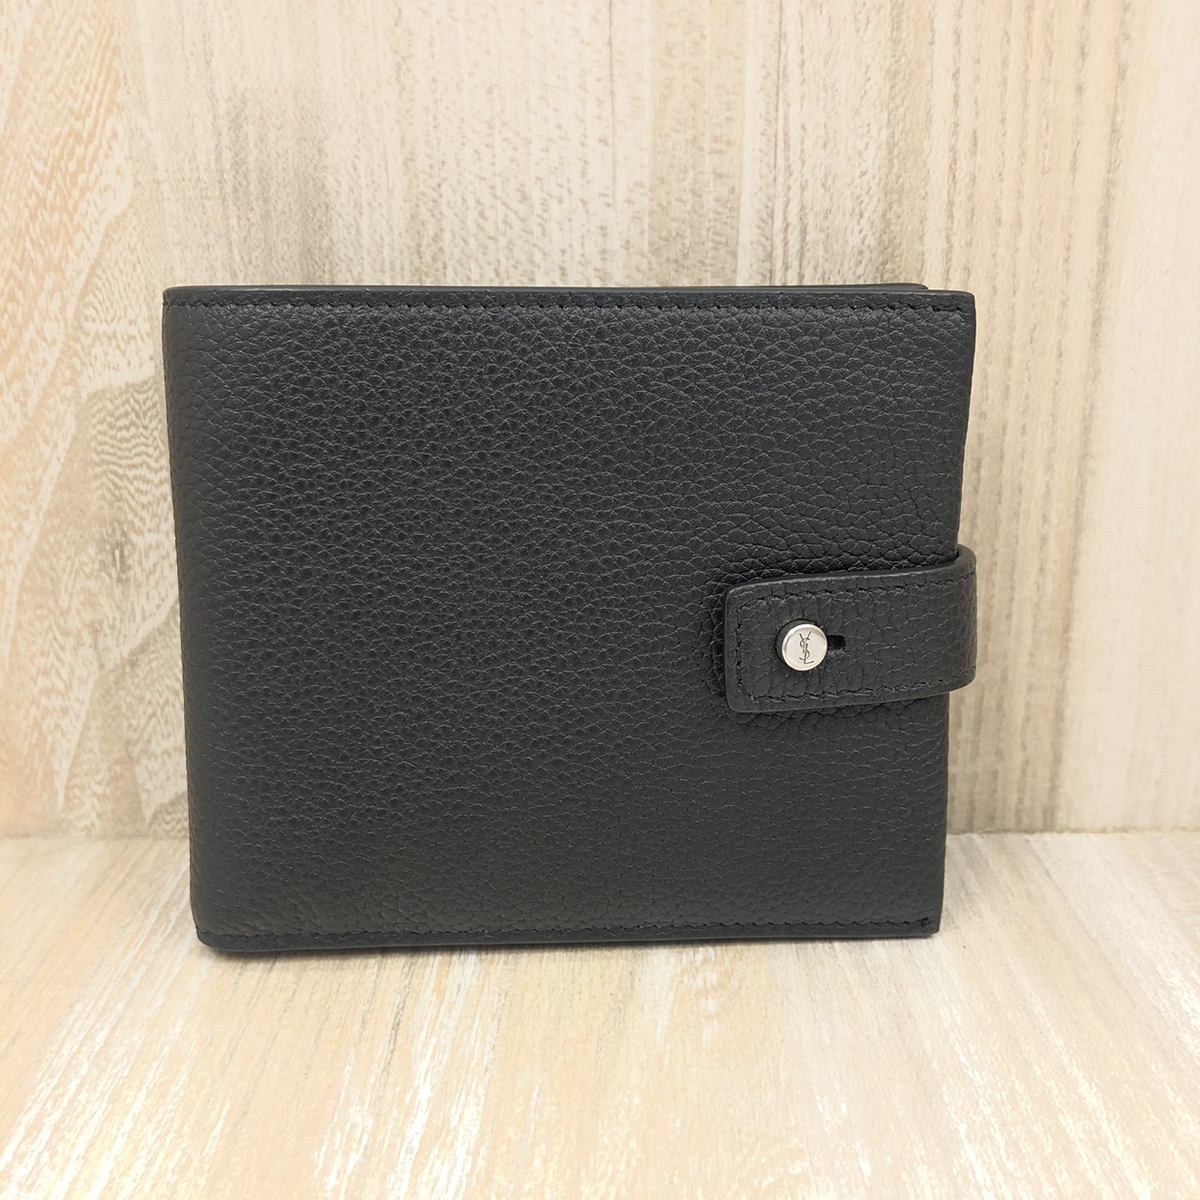 サンローランパリのGBL507618 ブラック レザー素材 2つ折り財布の買取実績です。